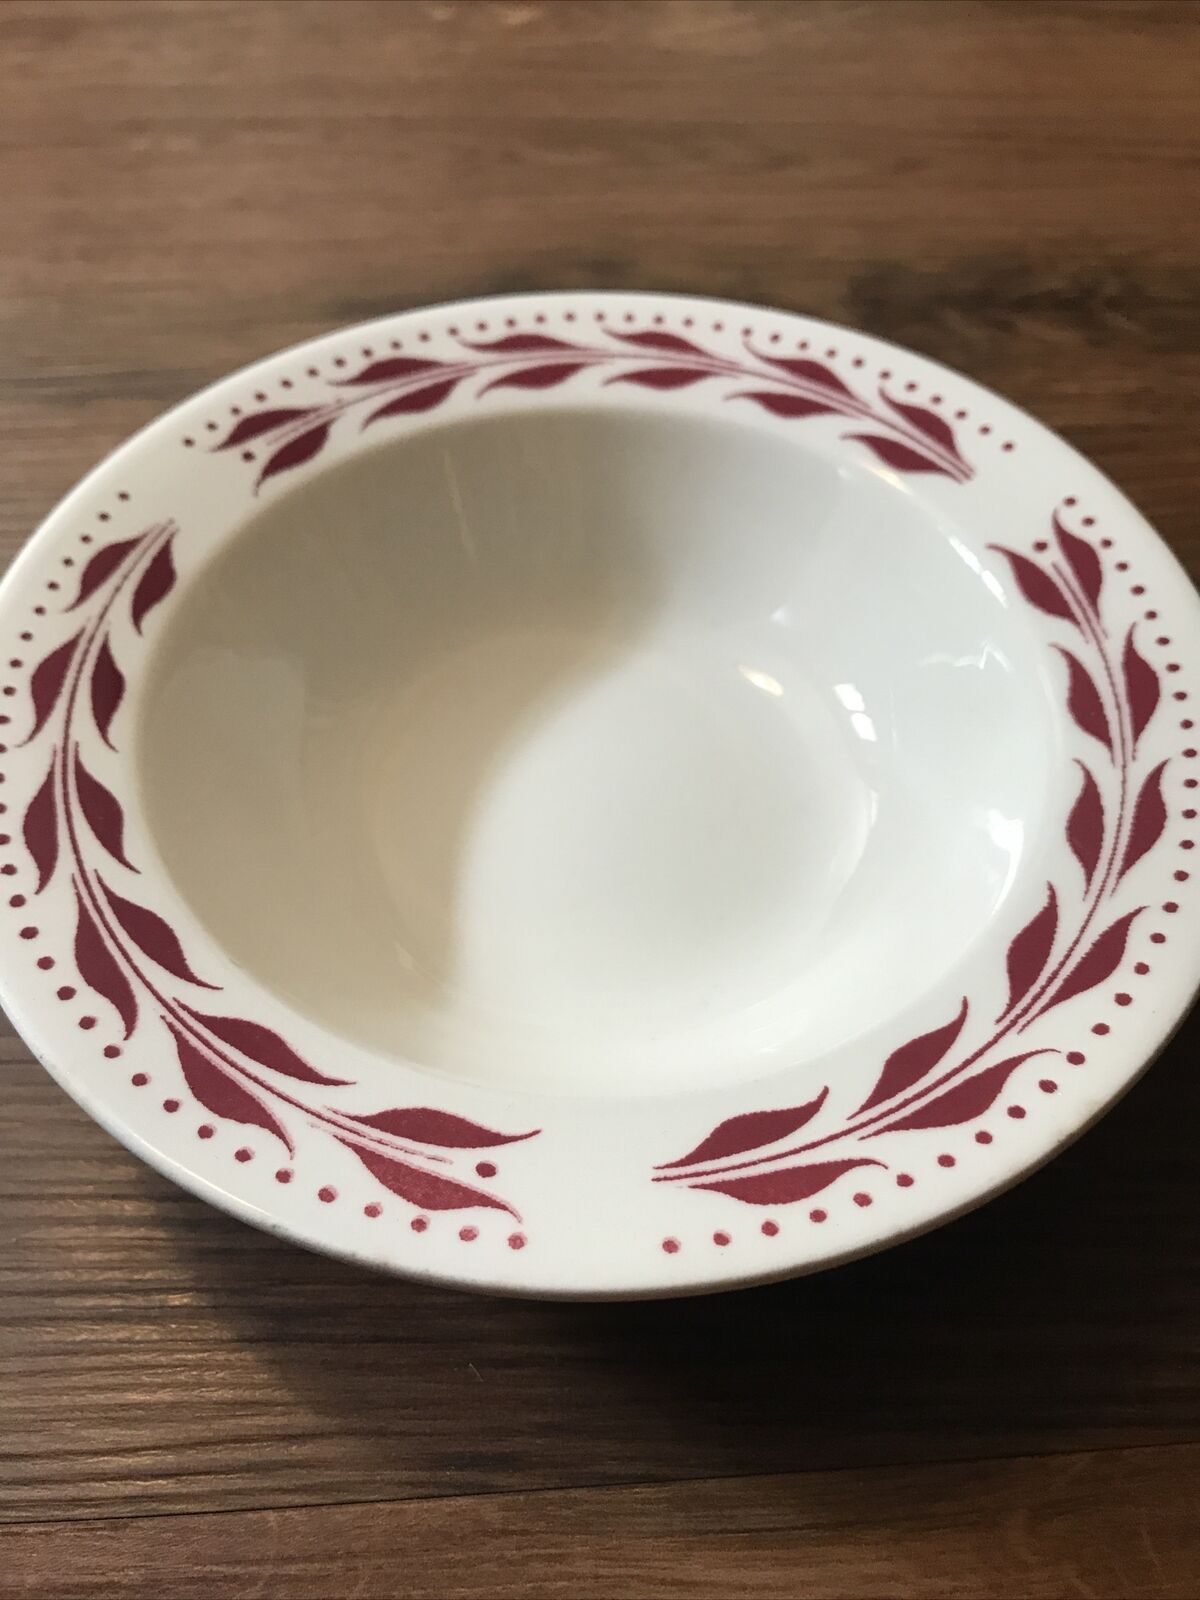 HOMER LAUGHLIN USA RED HEMLOCK 6” bowl soup salad  dinnerware red leaf VINTAGE